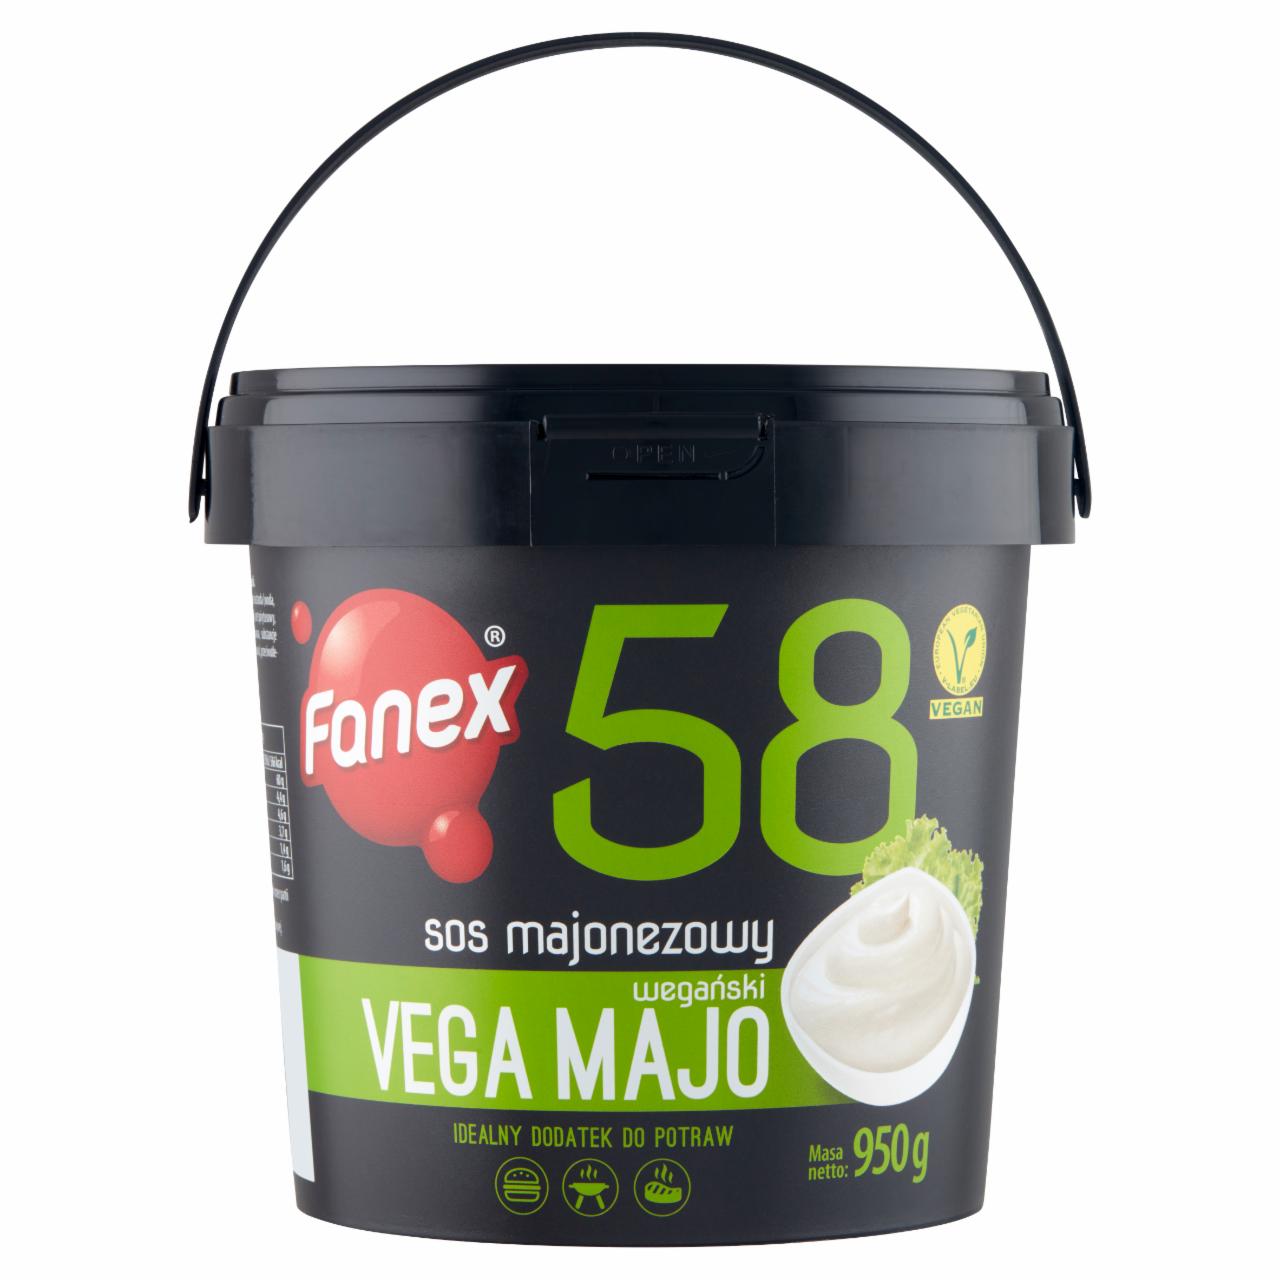 Zdjęcia - Fanex Vega Majo Sos majonezowy wegański 950 g